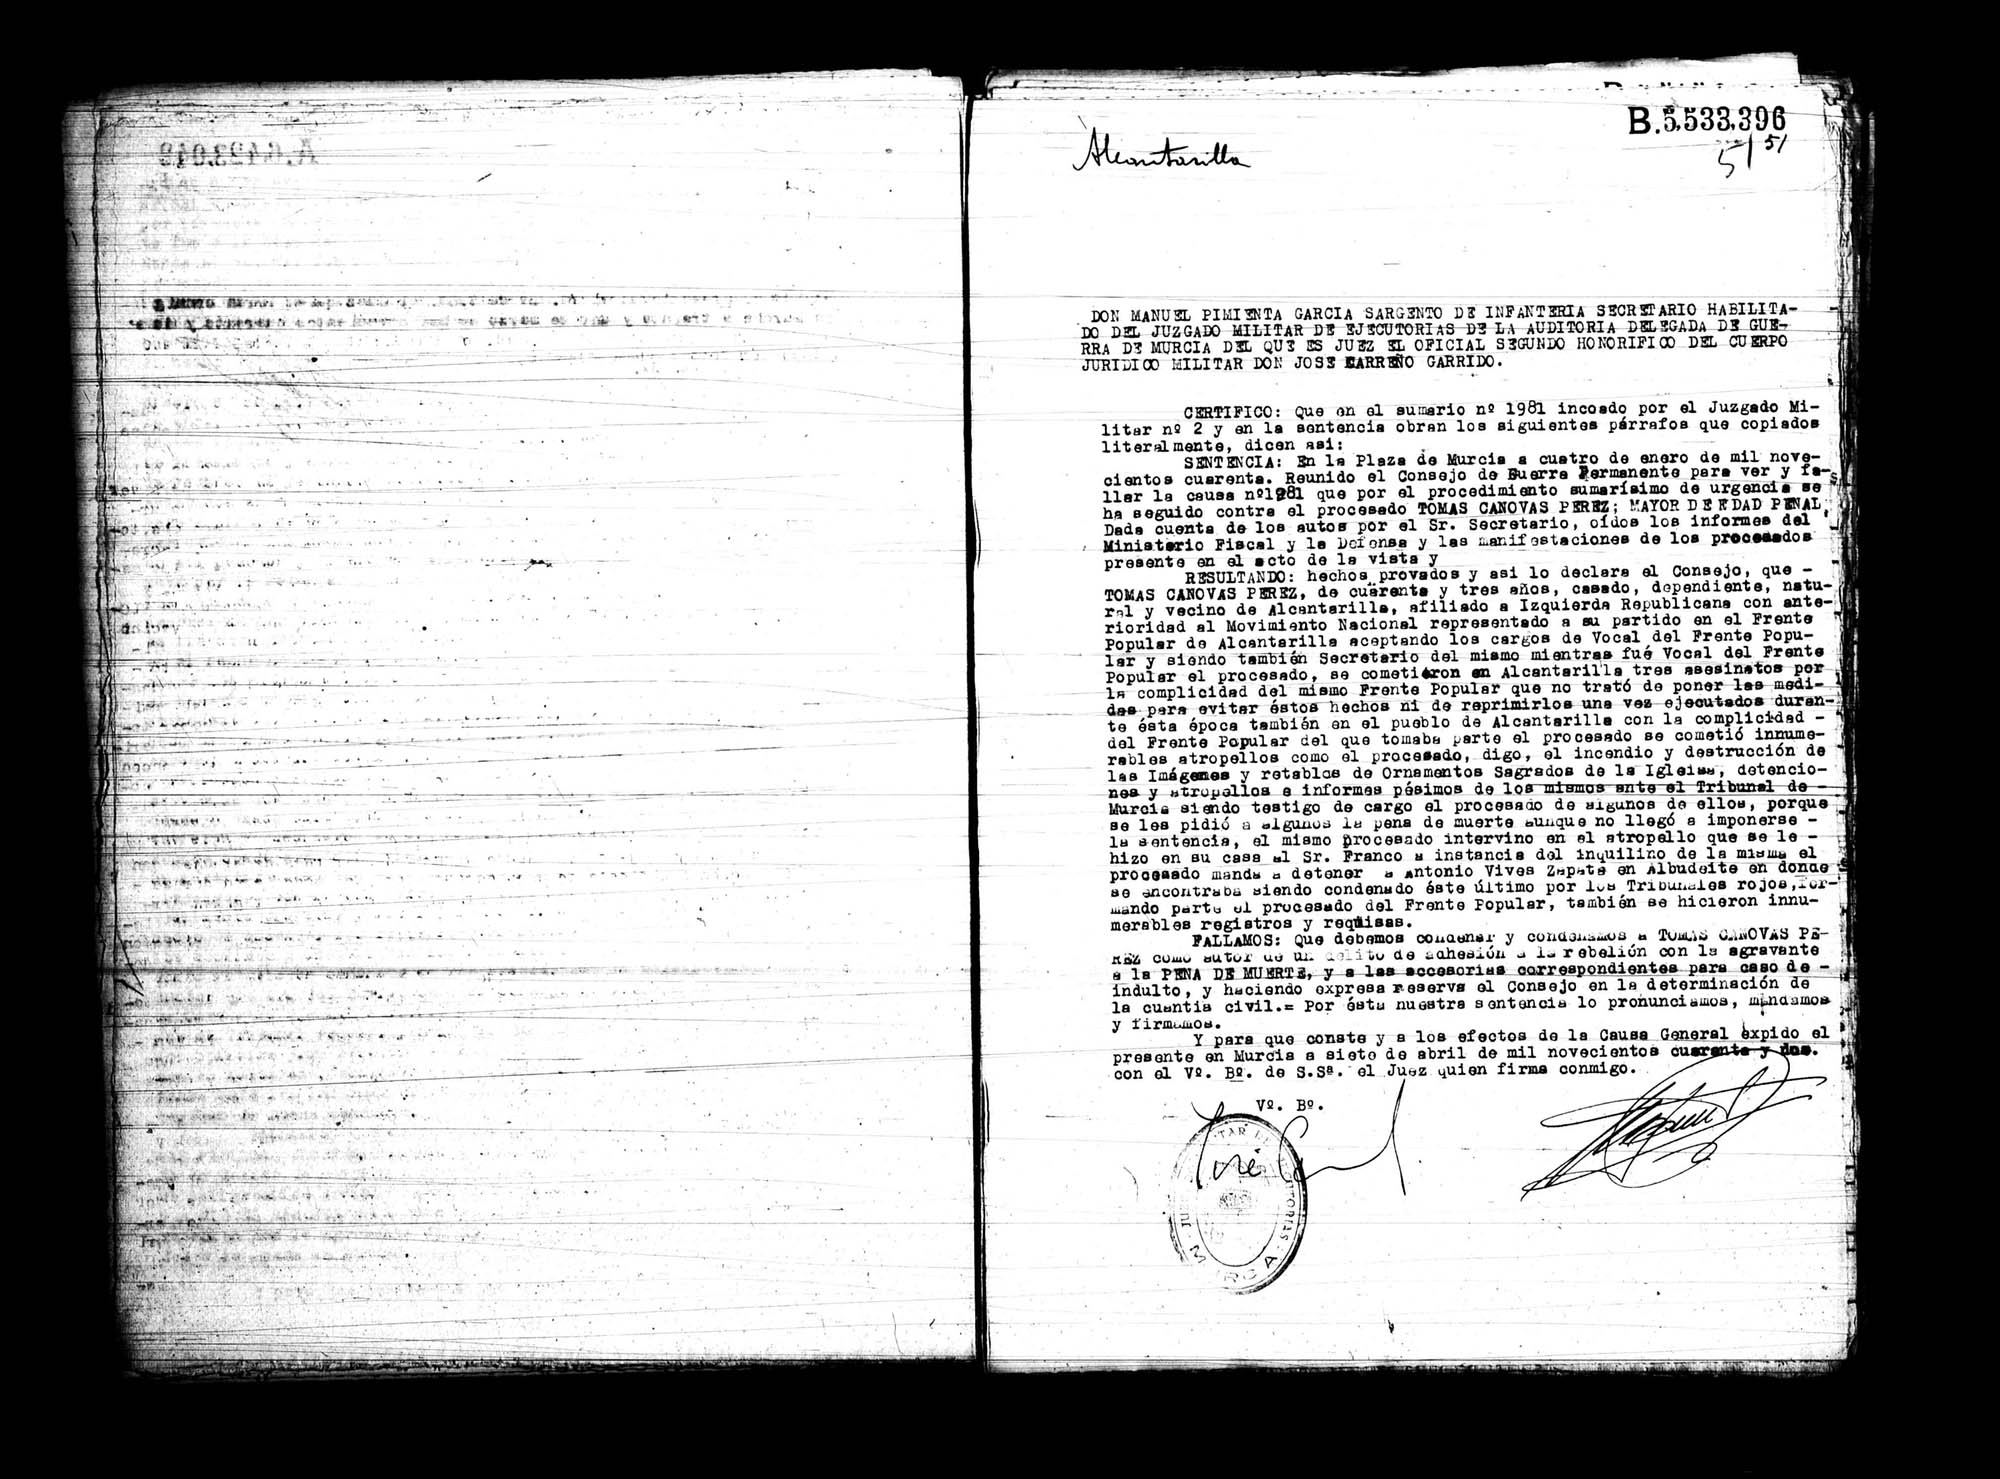 Certificado de la sentencia pronunciada contra Tomás Cánovas Pérez, causa 1981, el 4 de enero de 1940.